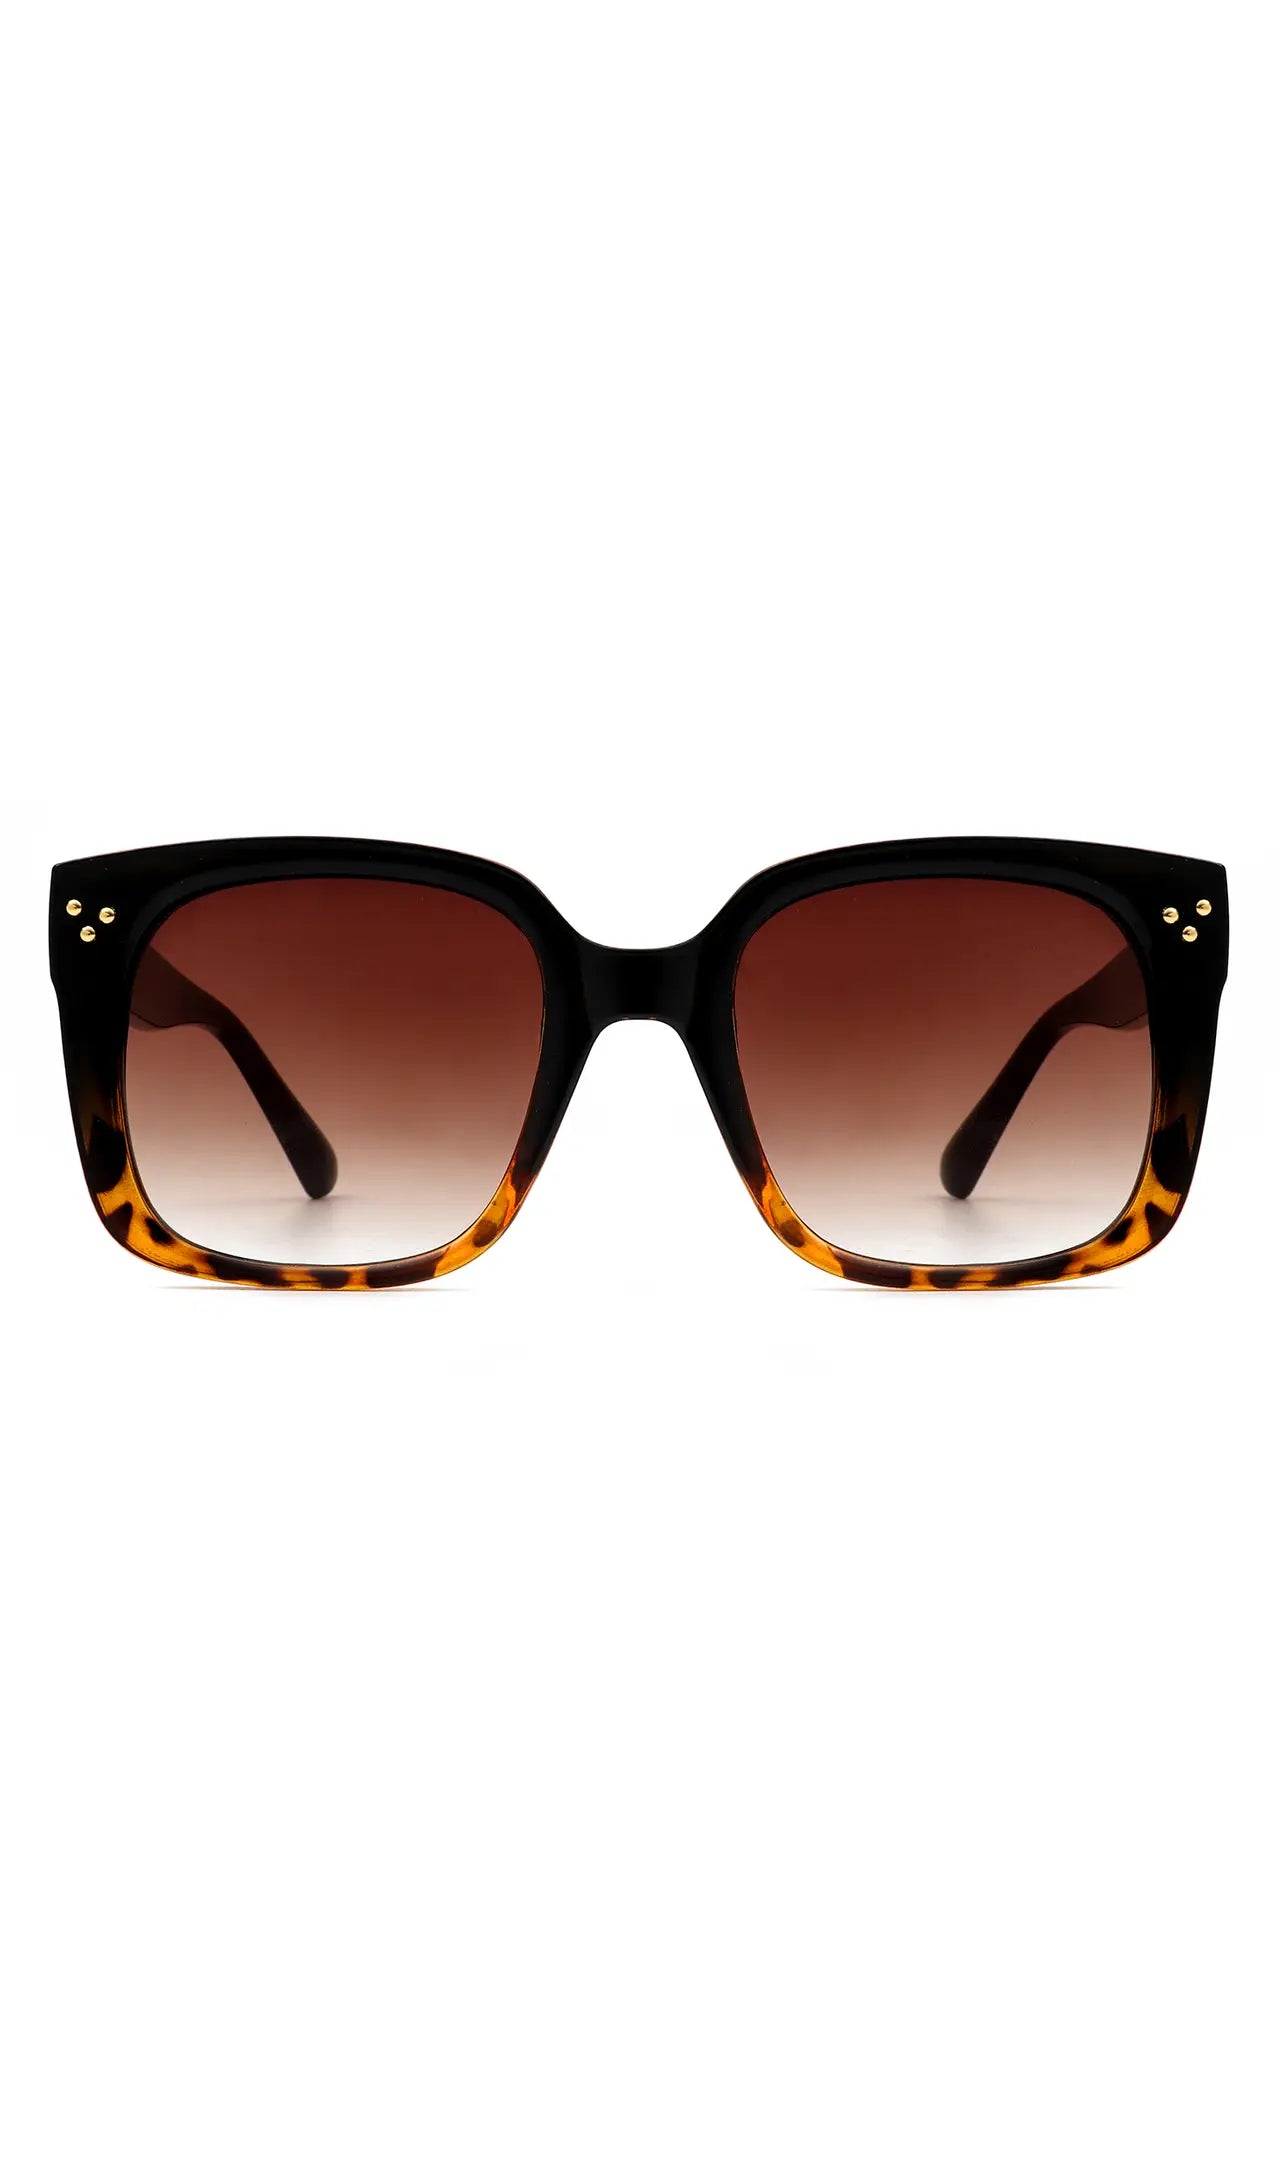 The Deborah Vintage Cat Eye Sunglasses